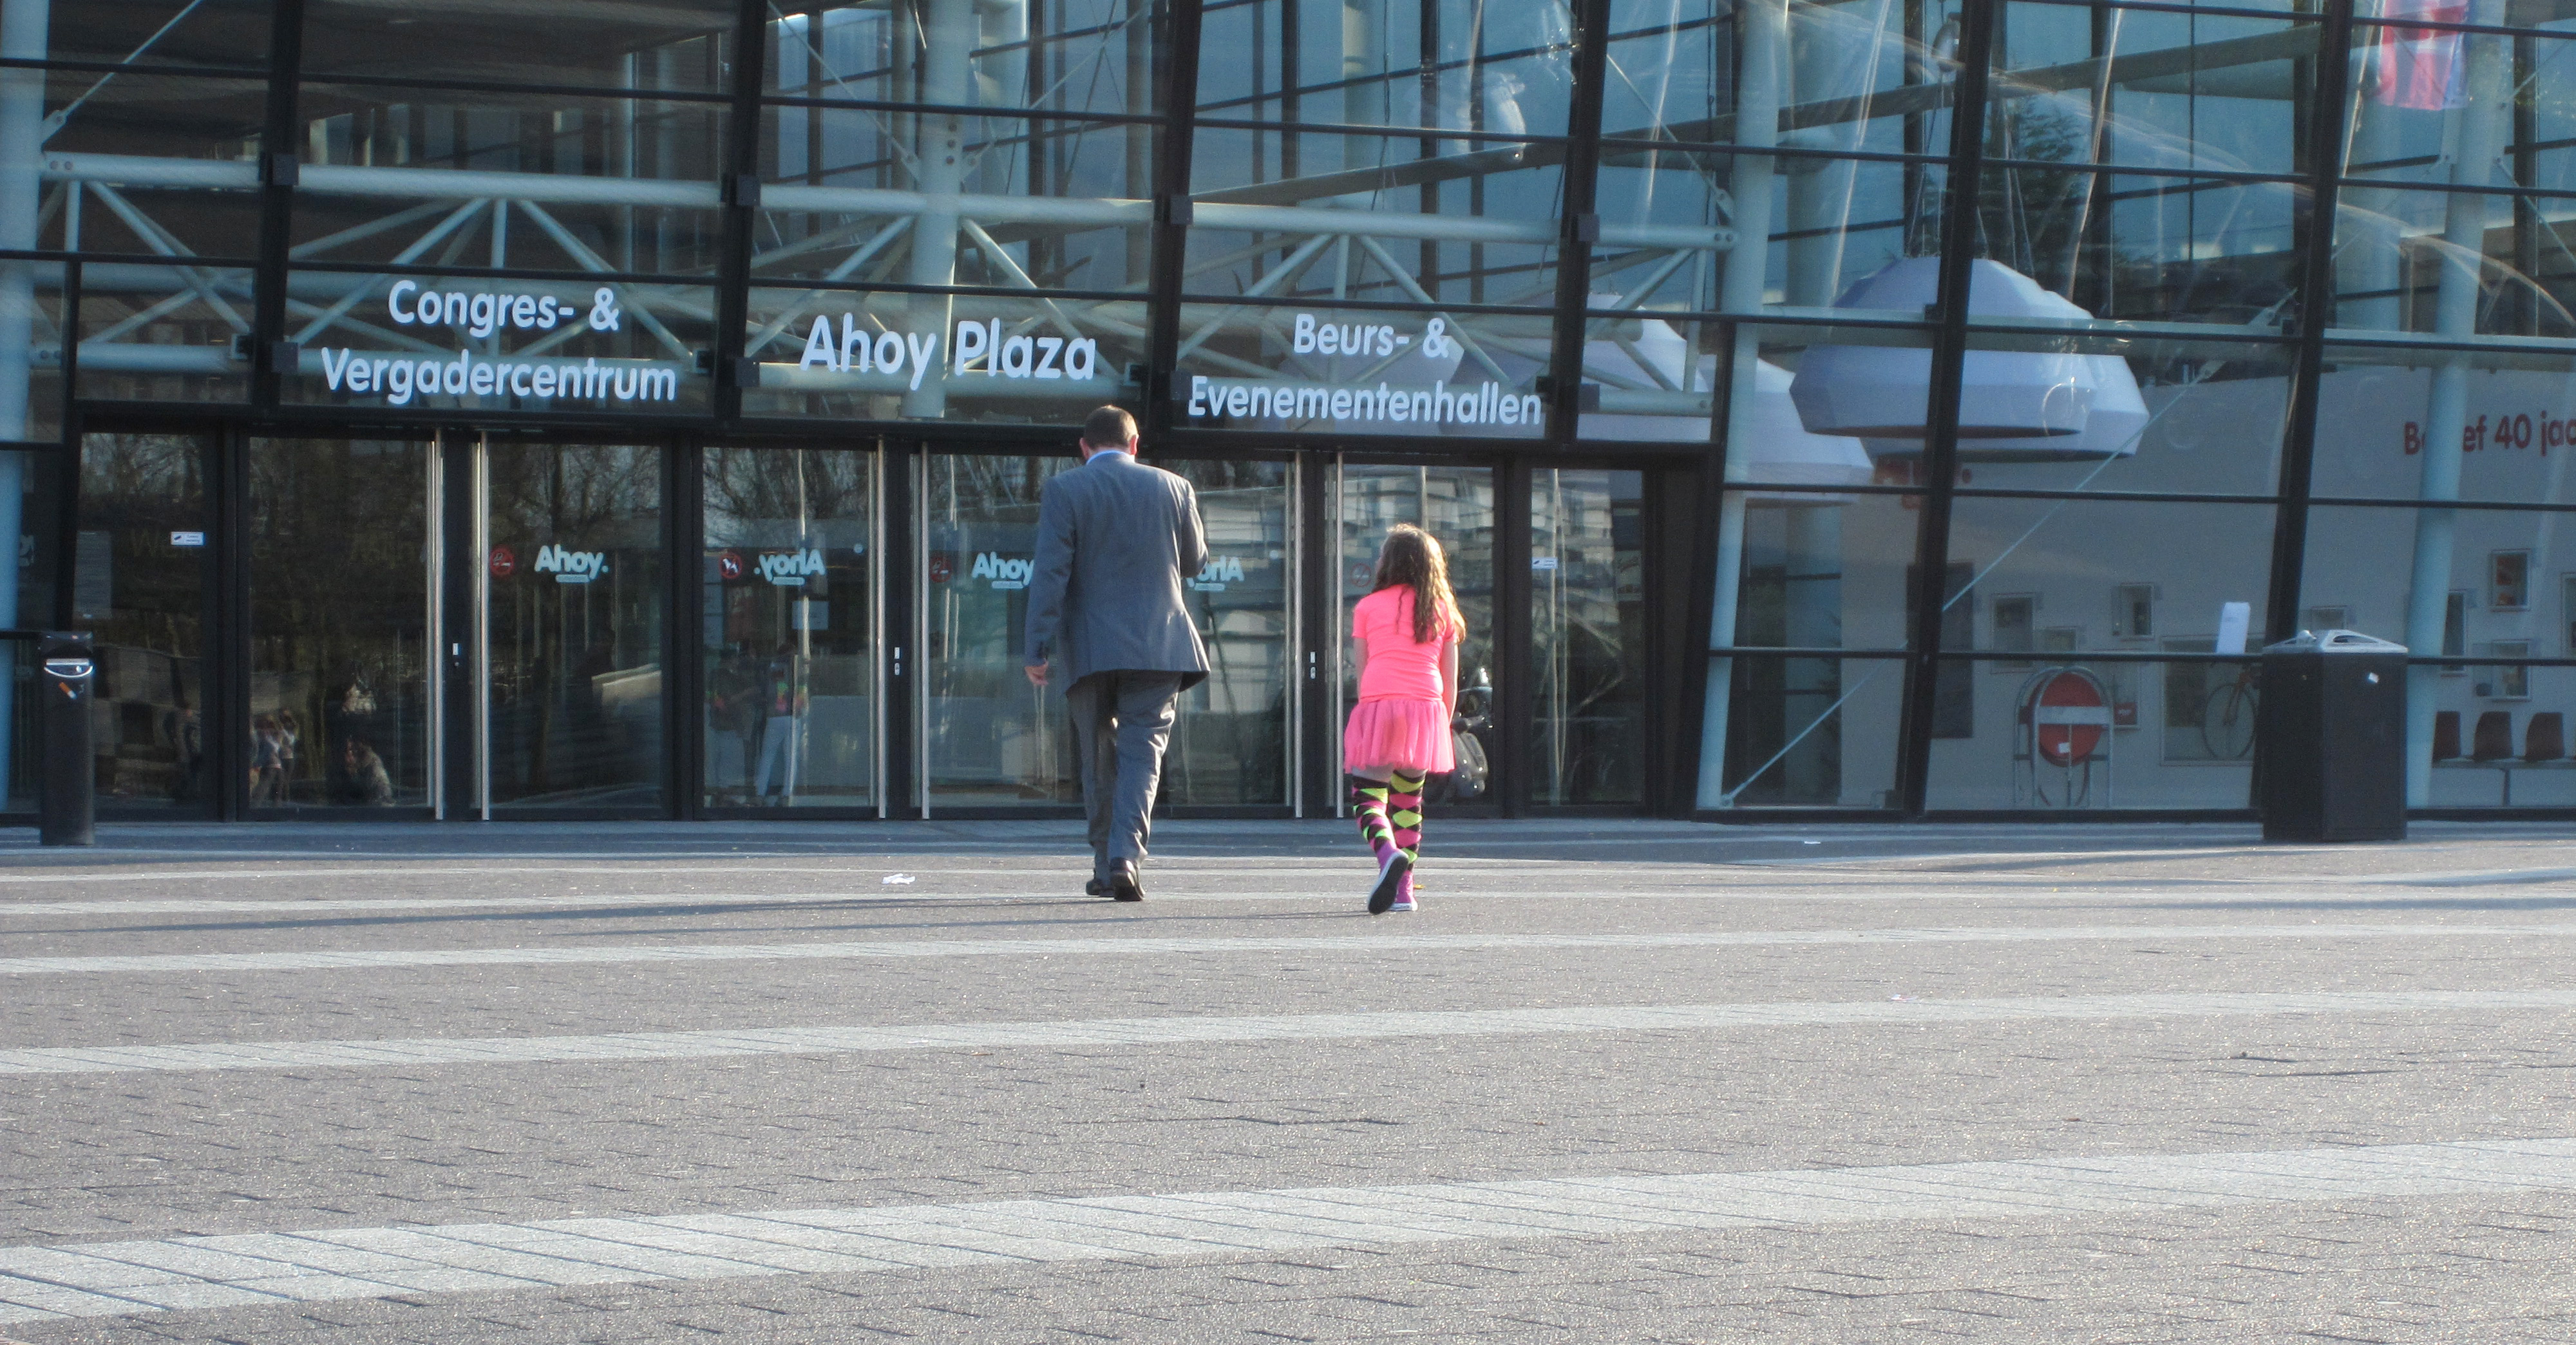 Een pappa die met z'n dochtertje richting kassa loopt om de kaartjes op te halen.